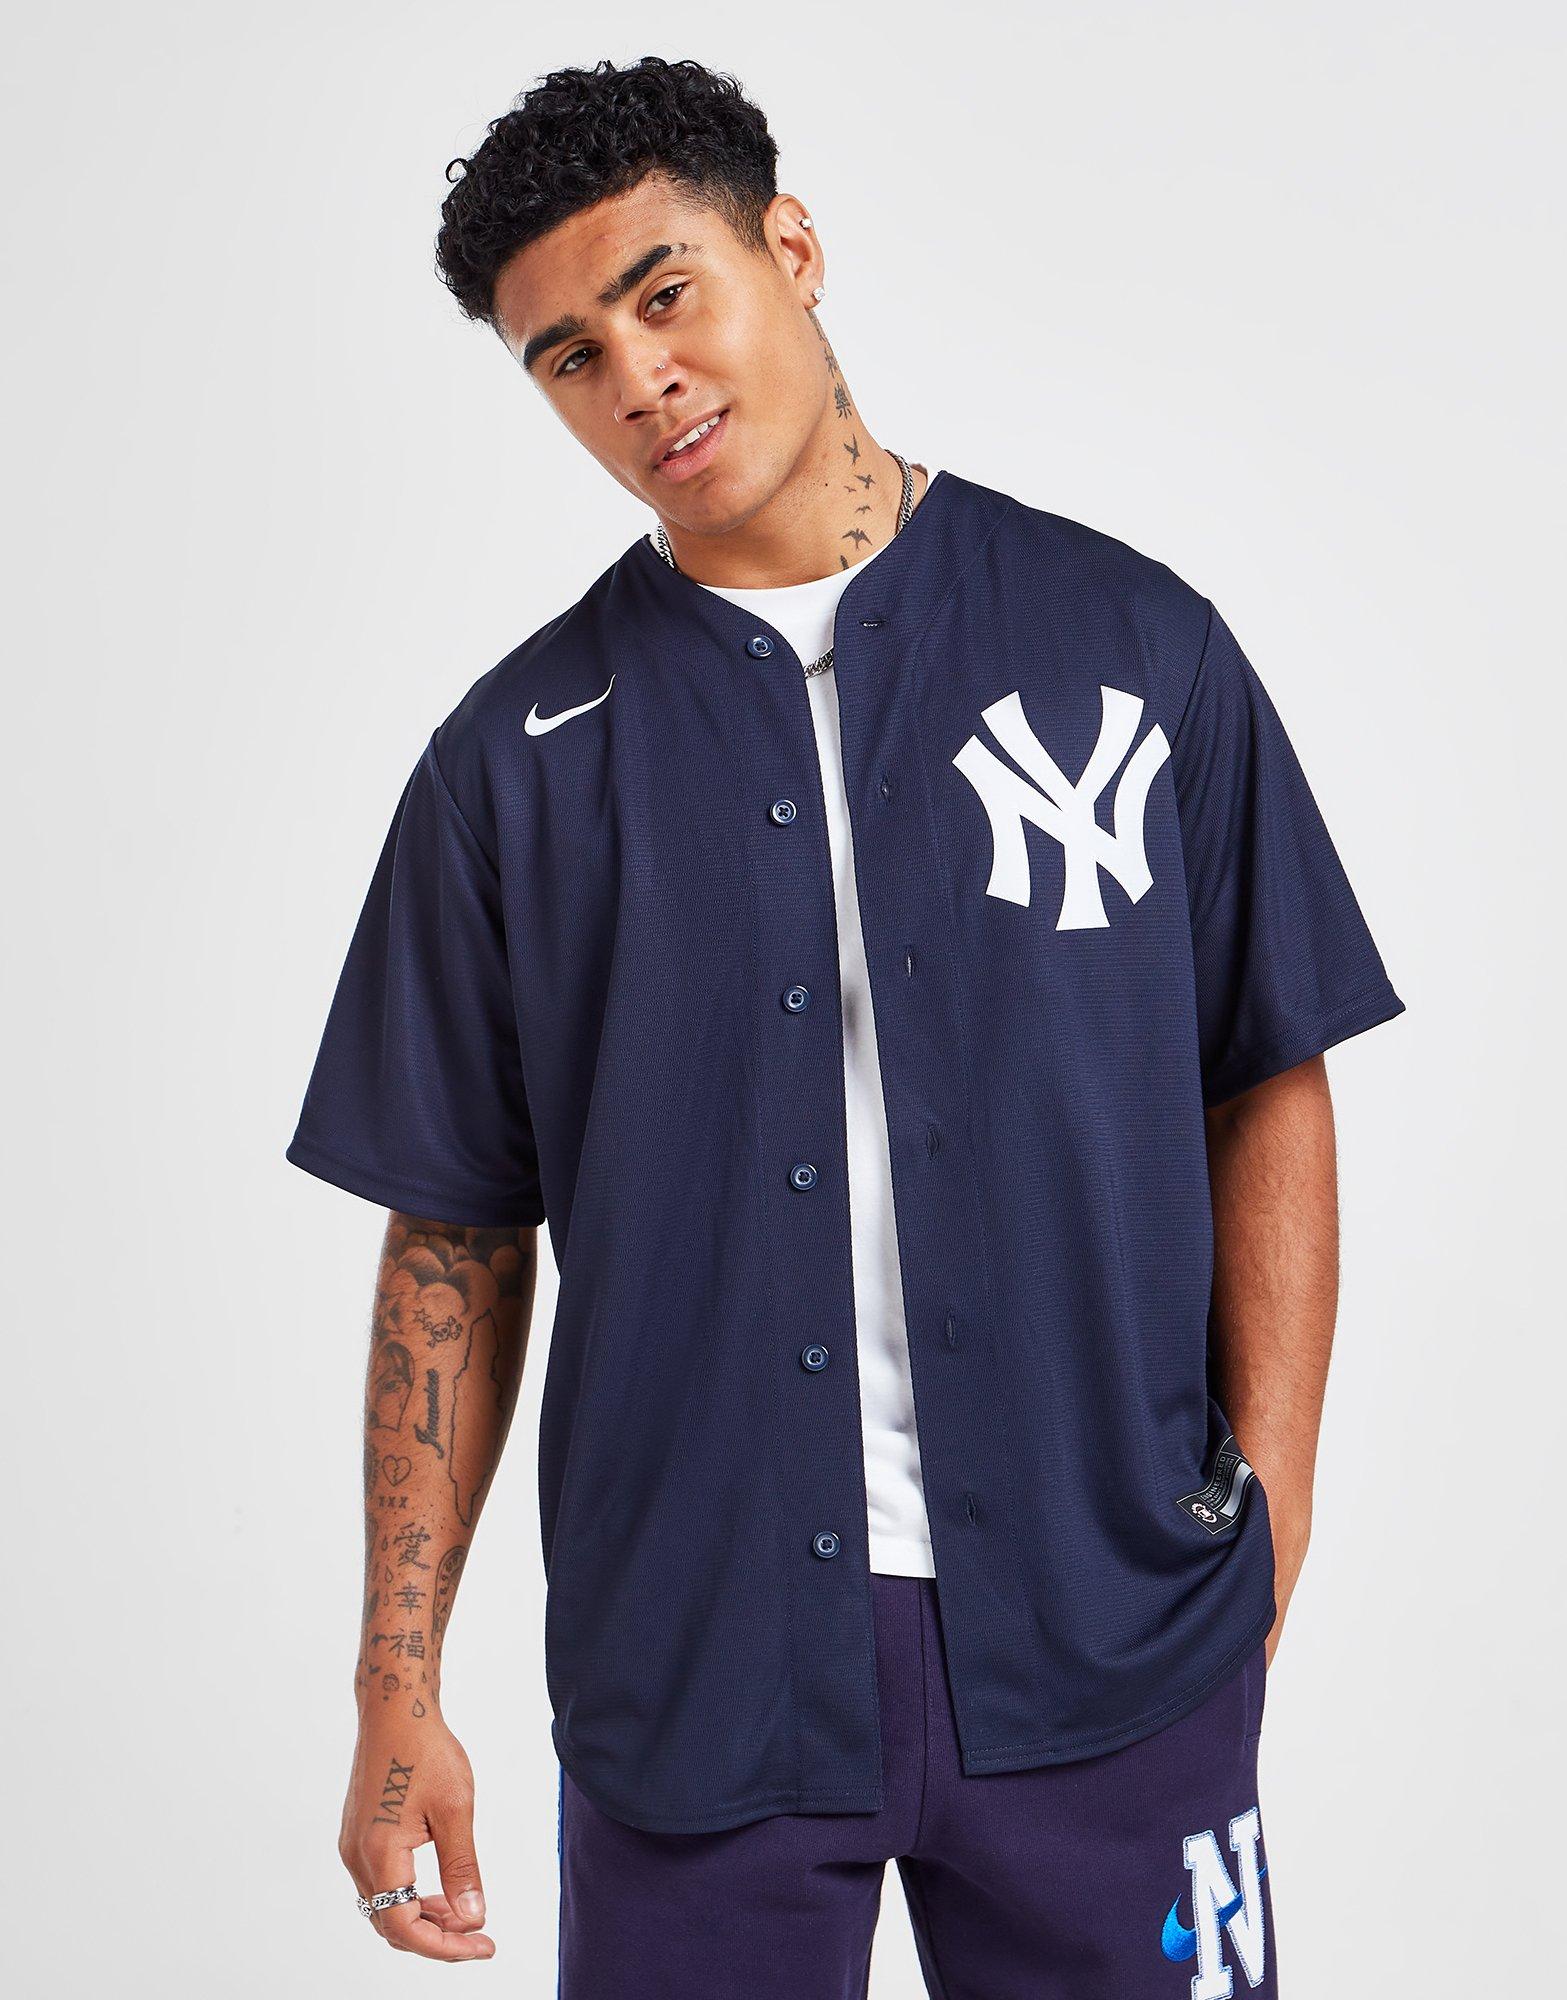 Blue Nike MLB New York Yankees Alternate Jersey Men's